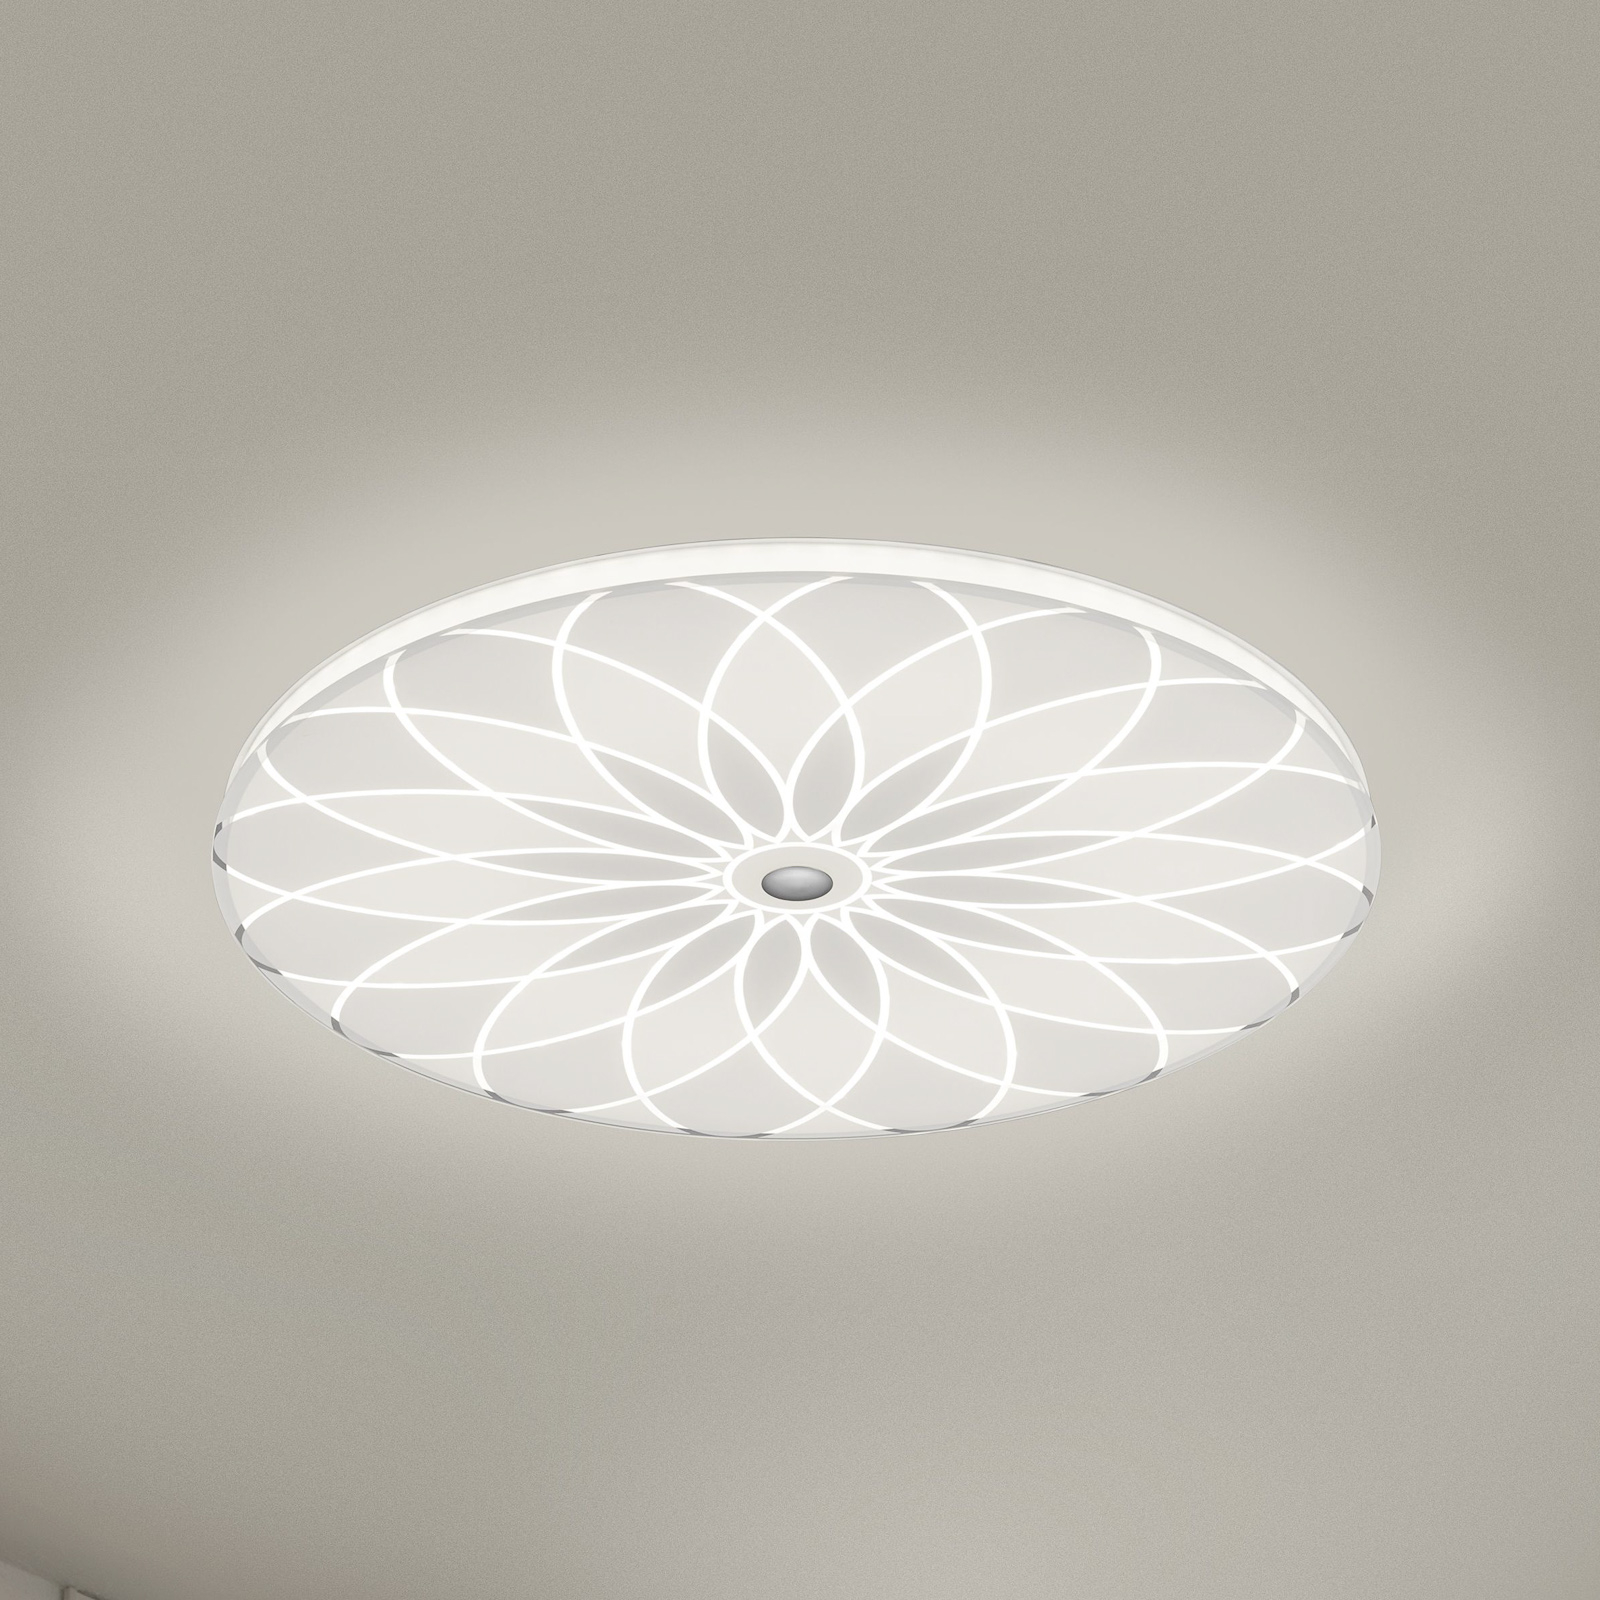 BANKAMP Mandala LED plafondlamp bloem, Ø 42 cm